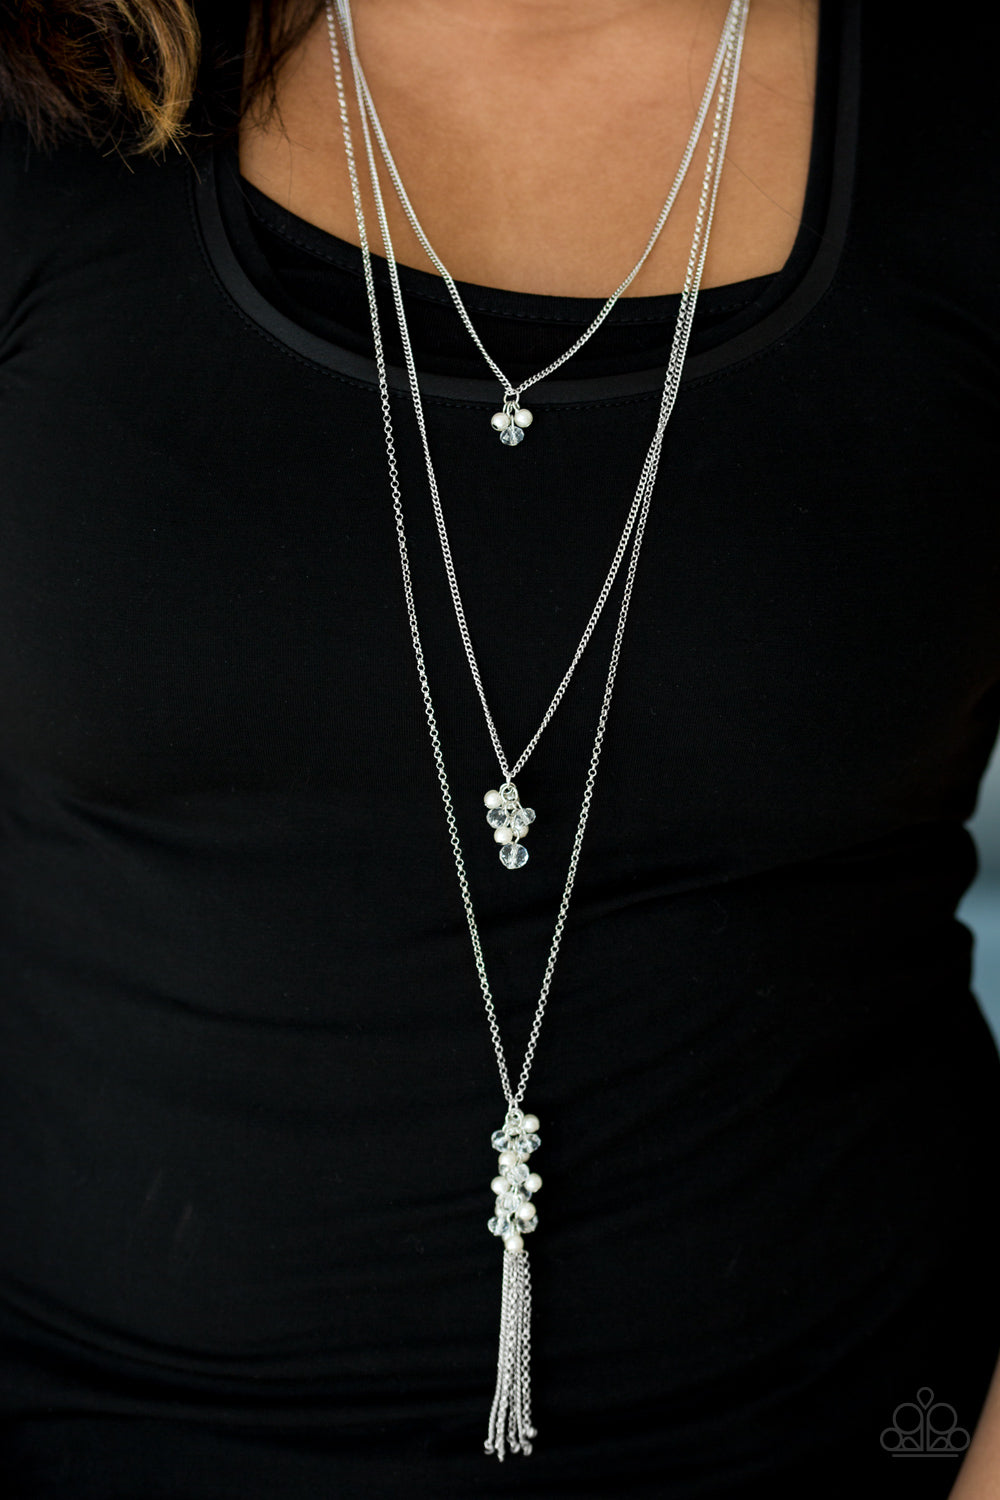 Crystal Cruiser - white - Paparazzi necklace